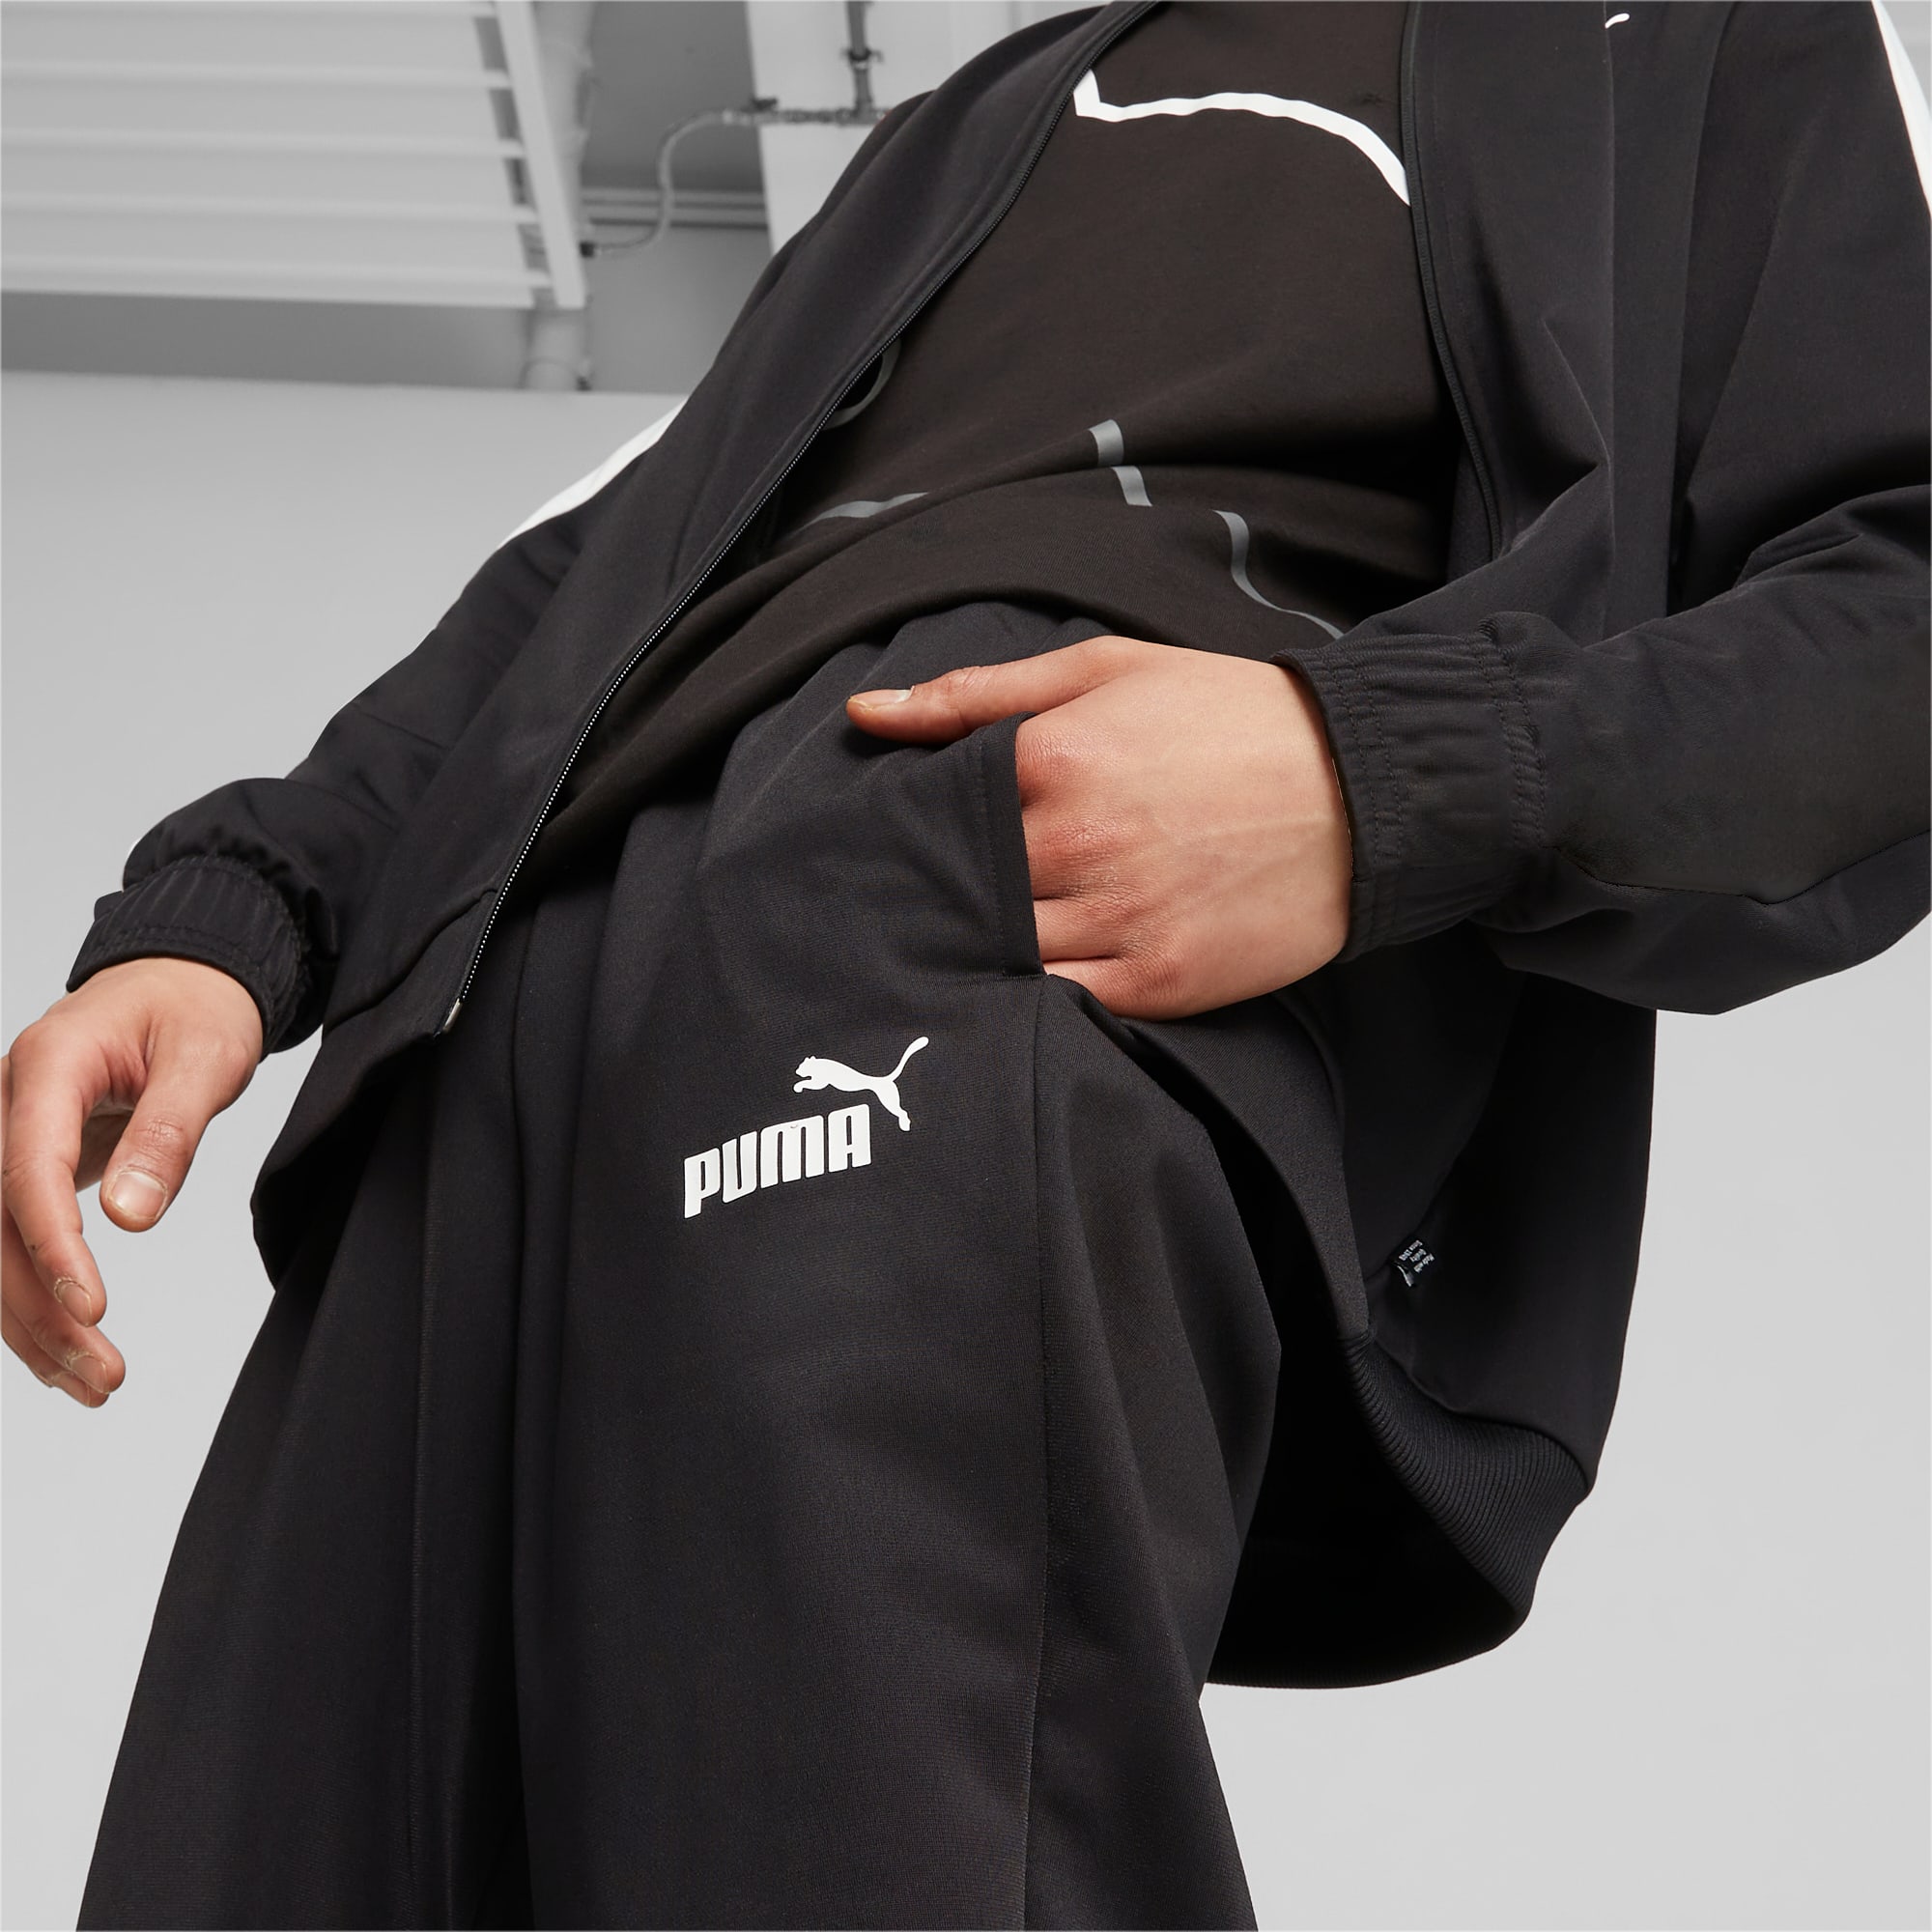 PUMA Men's Baseball Tricot Suit, Black, Size XL